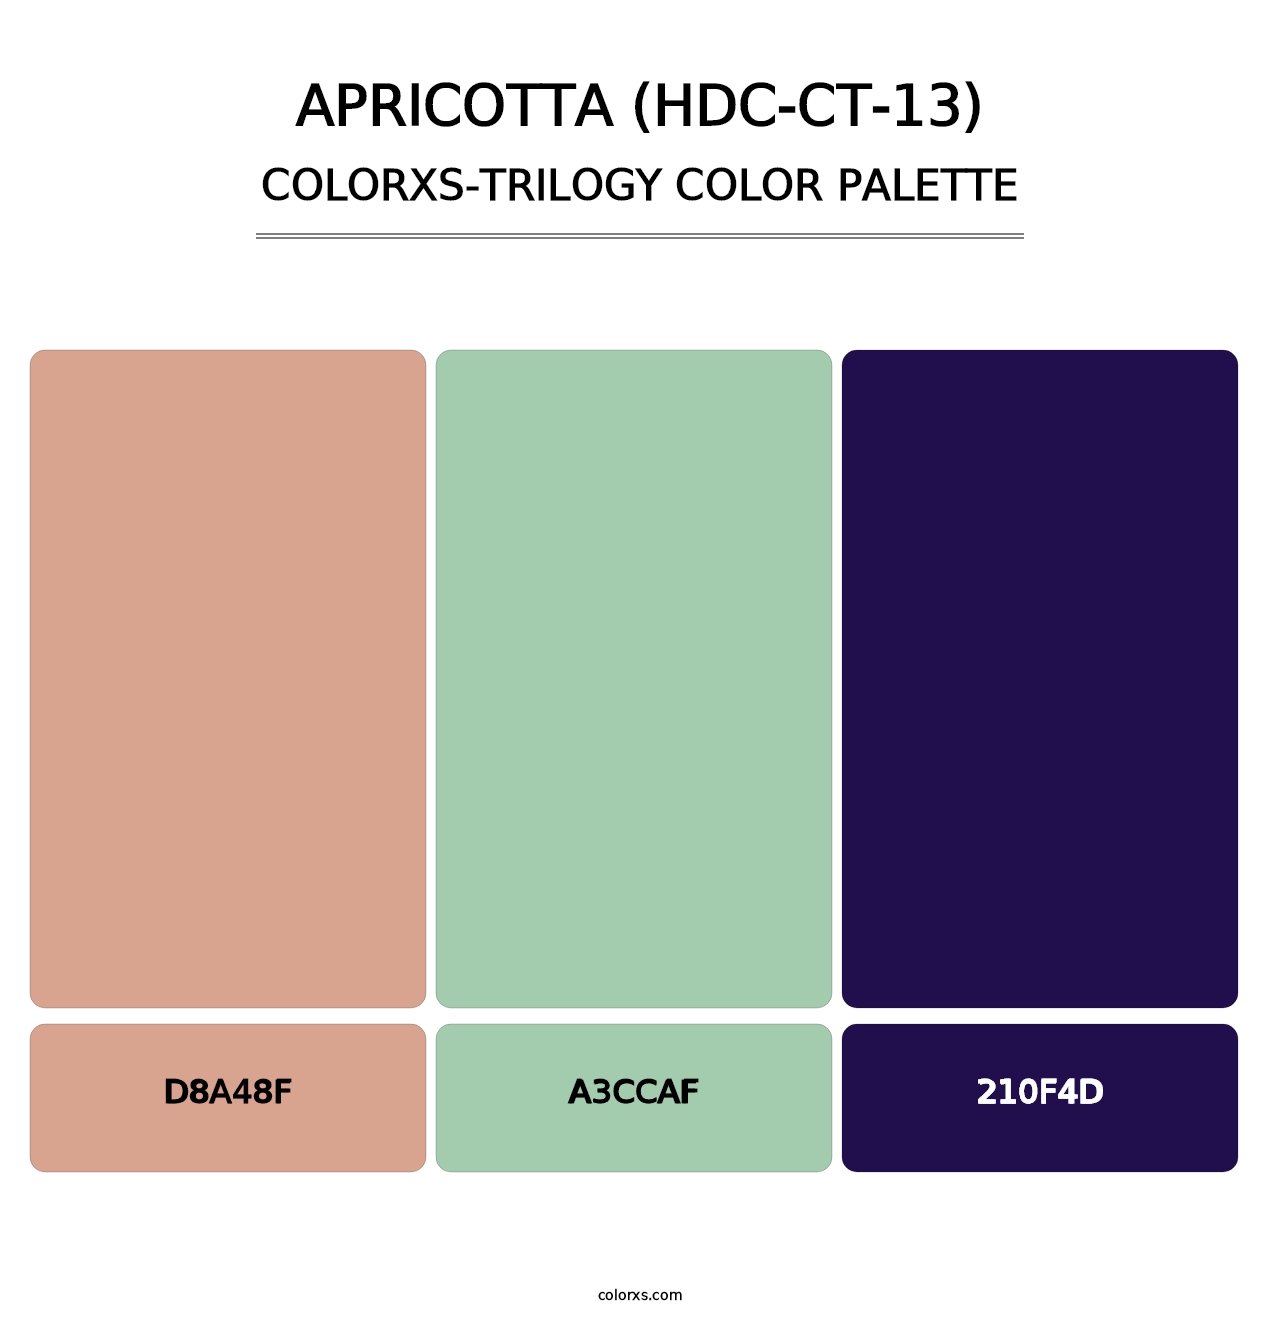 Apricotta (HDC-CT-13) - Colorxs Trilogy Palette